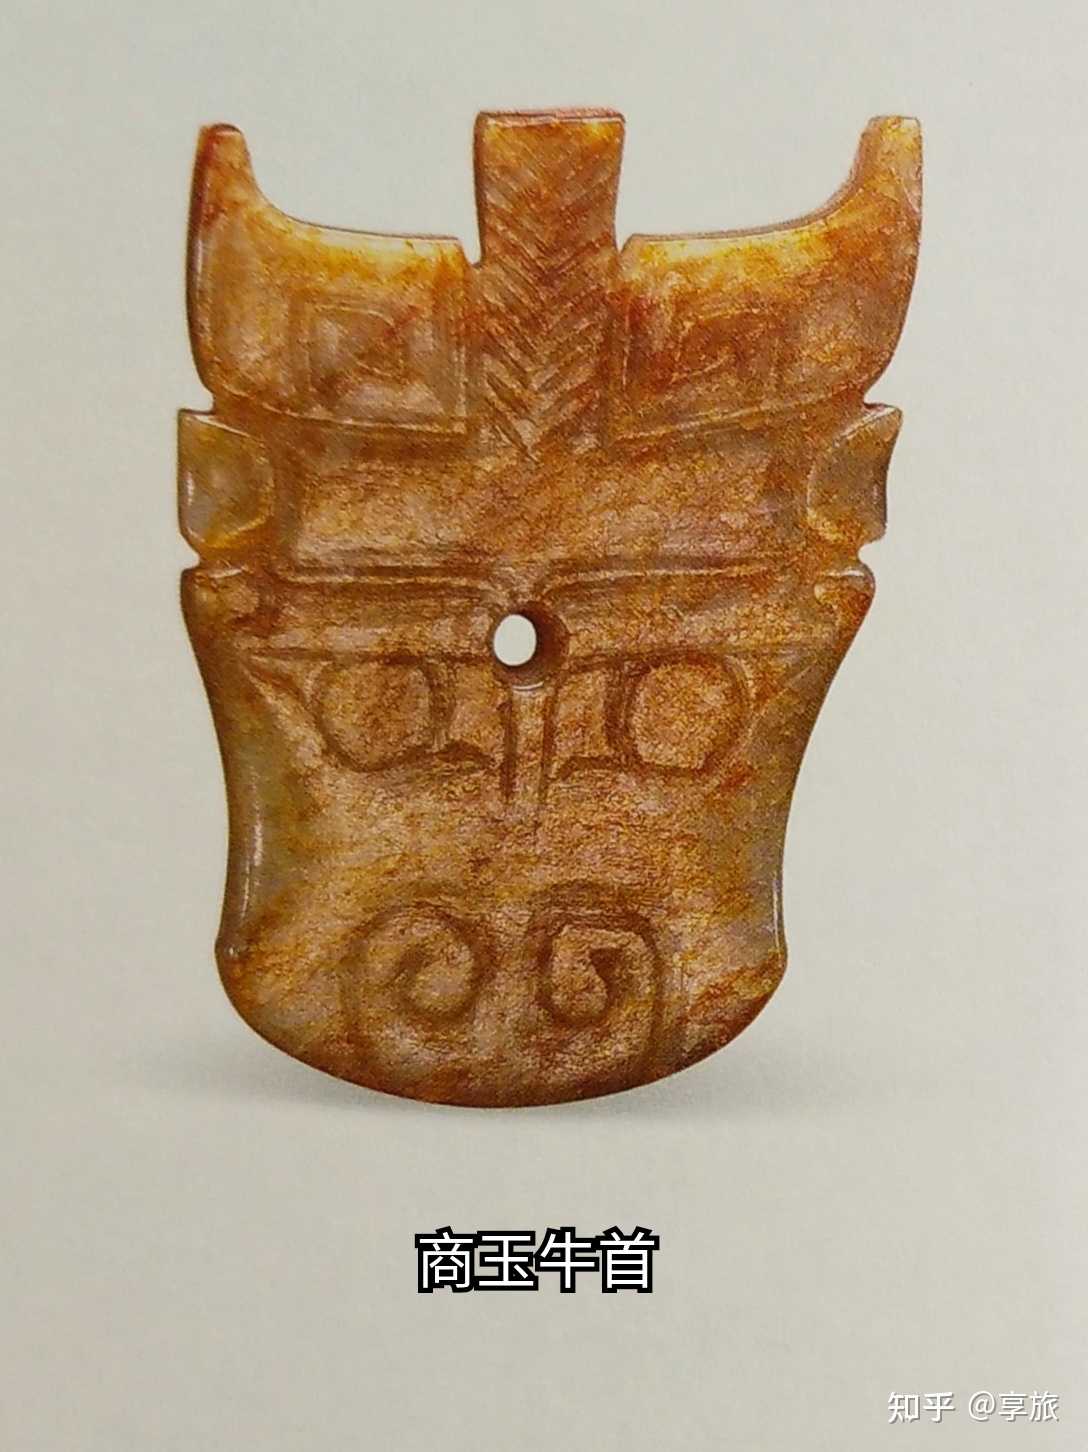 月十八日元旦二字选自唐代的楷书碑刻孟法师碑文物则是商代的玉牛首